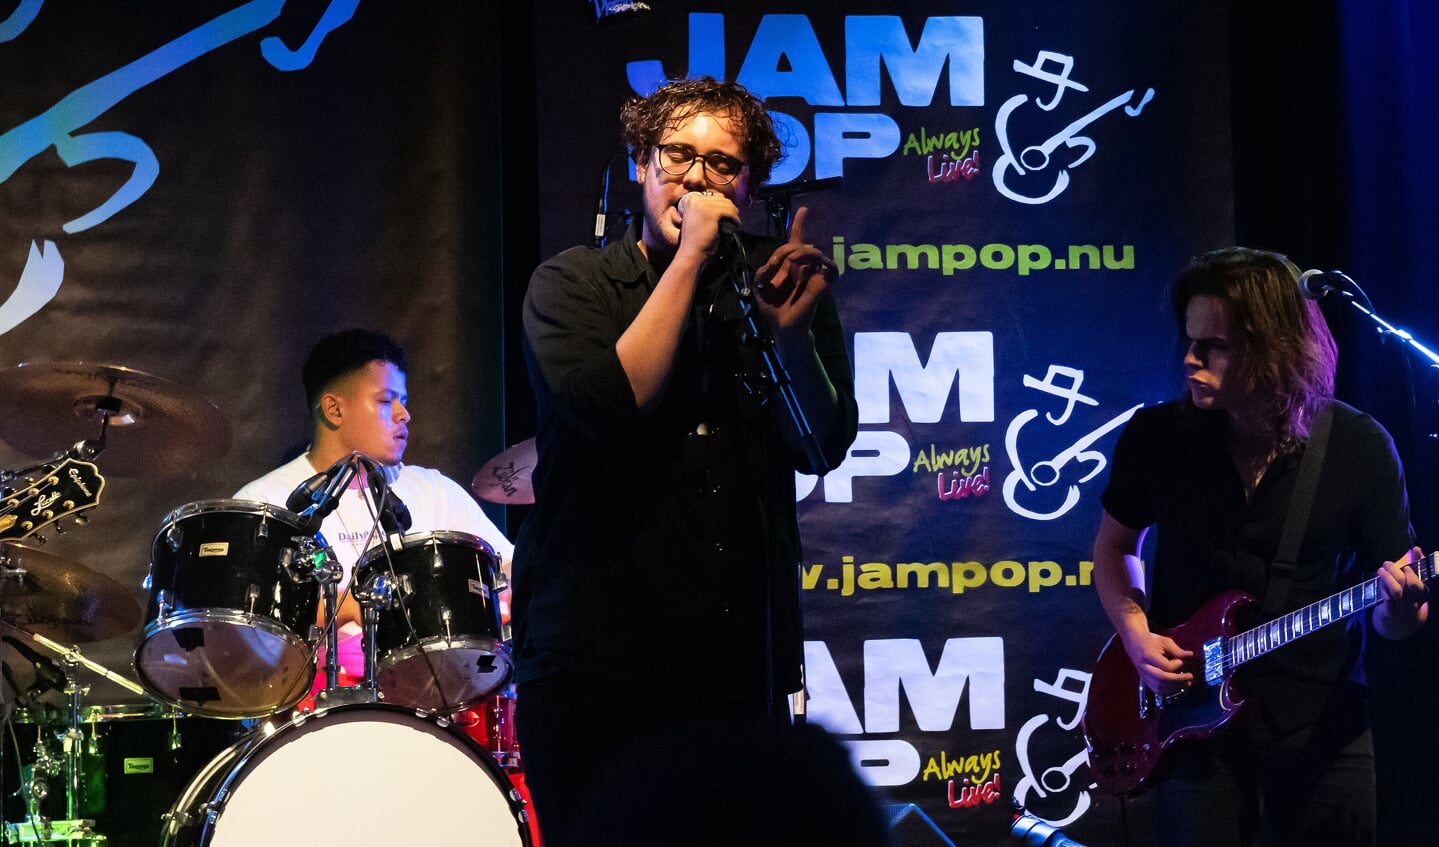 JamPop Live, Seizoen 2019-2020, Voorronde No 1